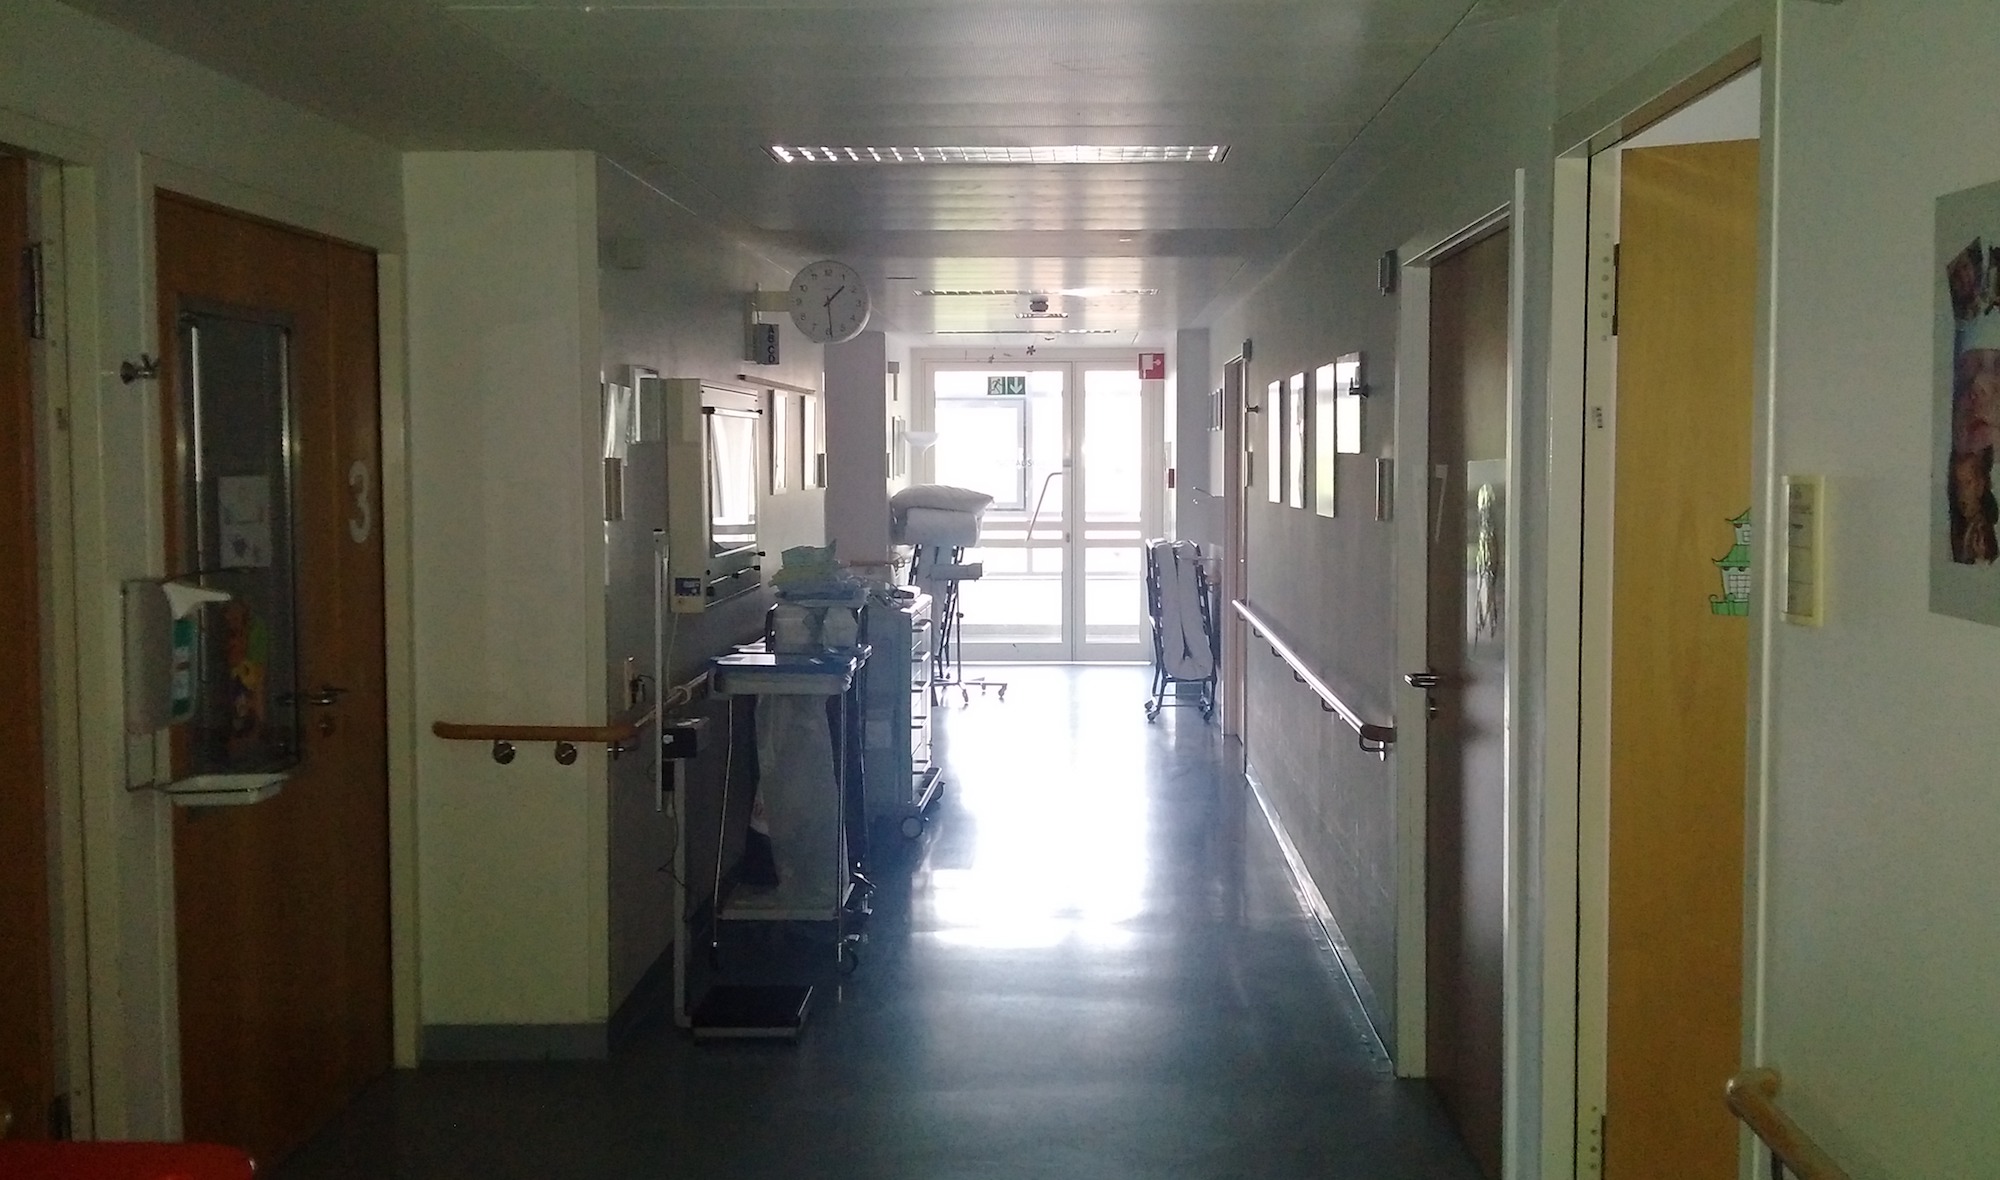 Krankenhausflur, auf dem auch ermächtigte Ärzte entlanglaufen können